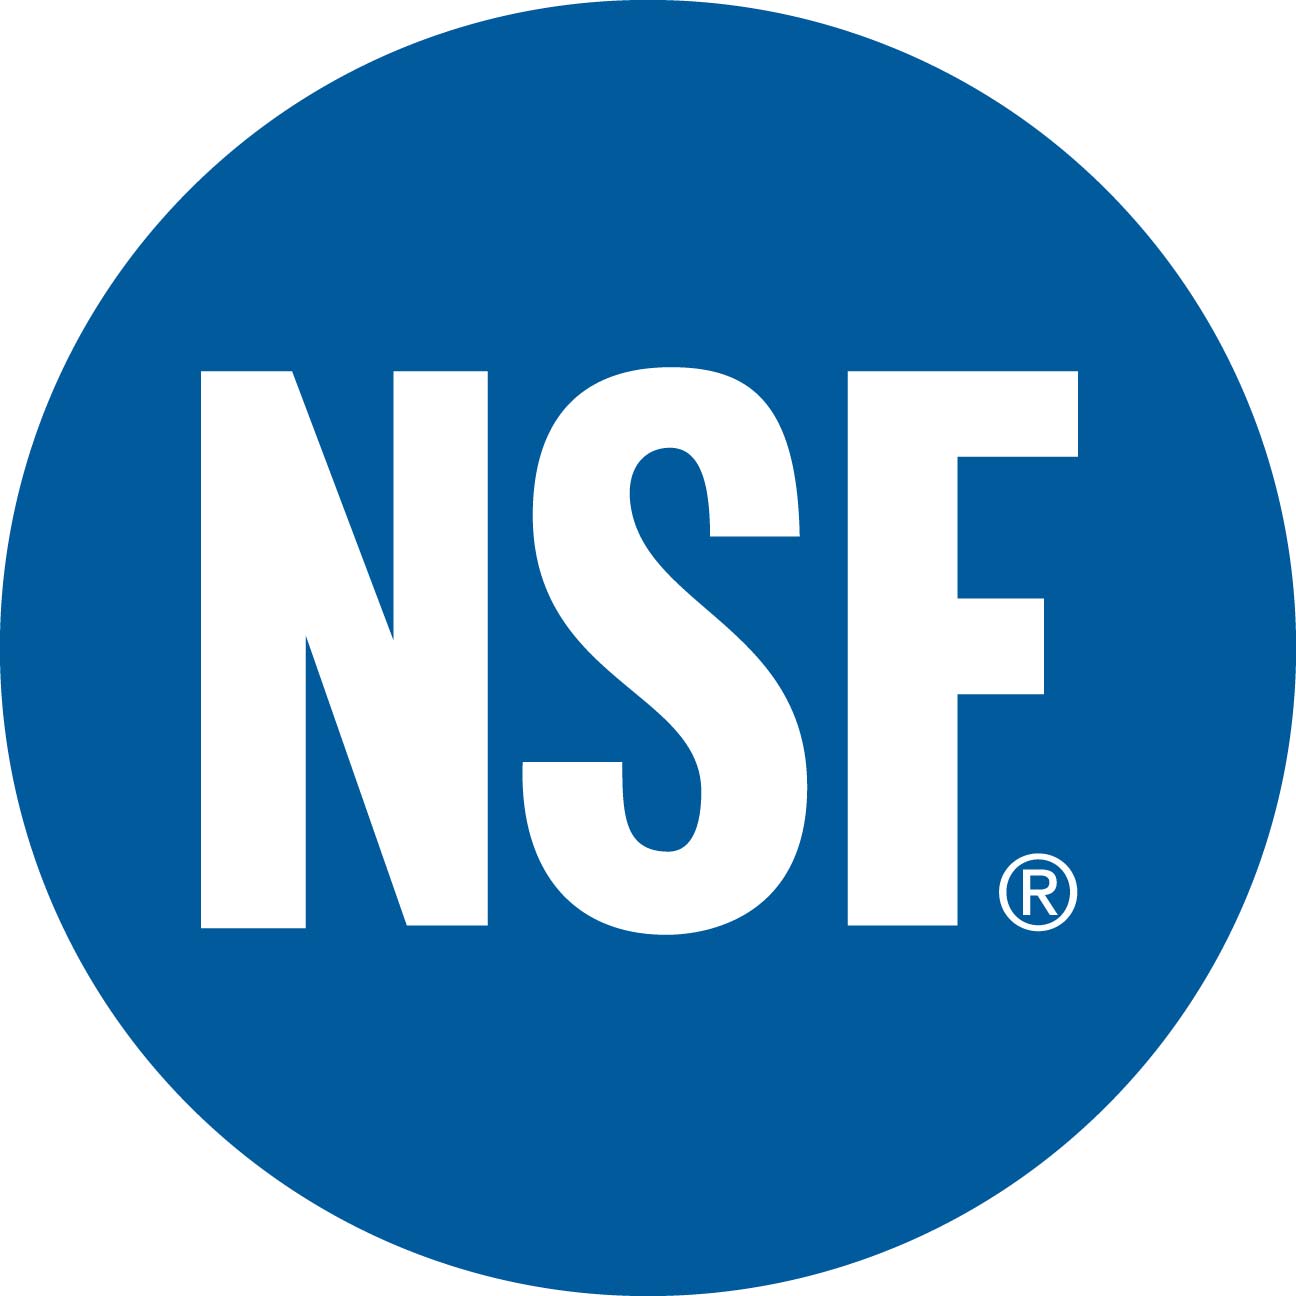 استاندارد NSF چیست؟